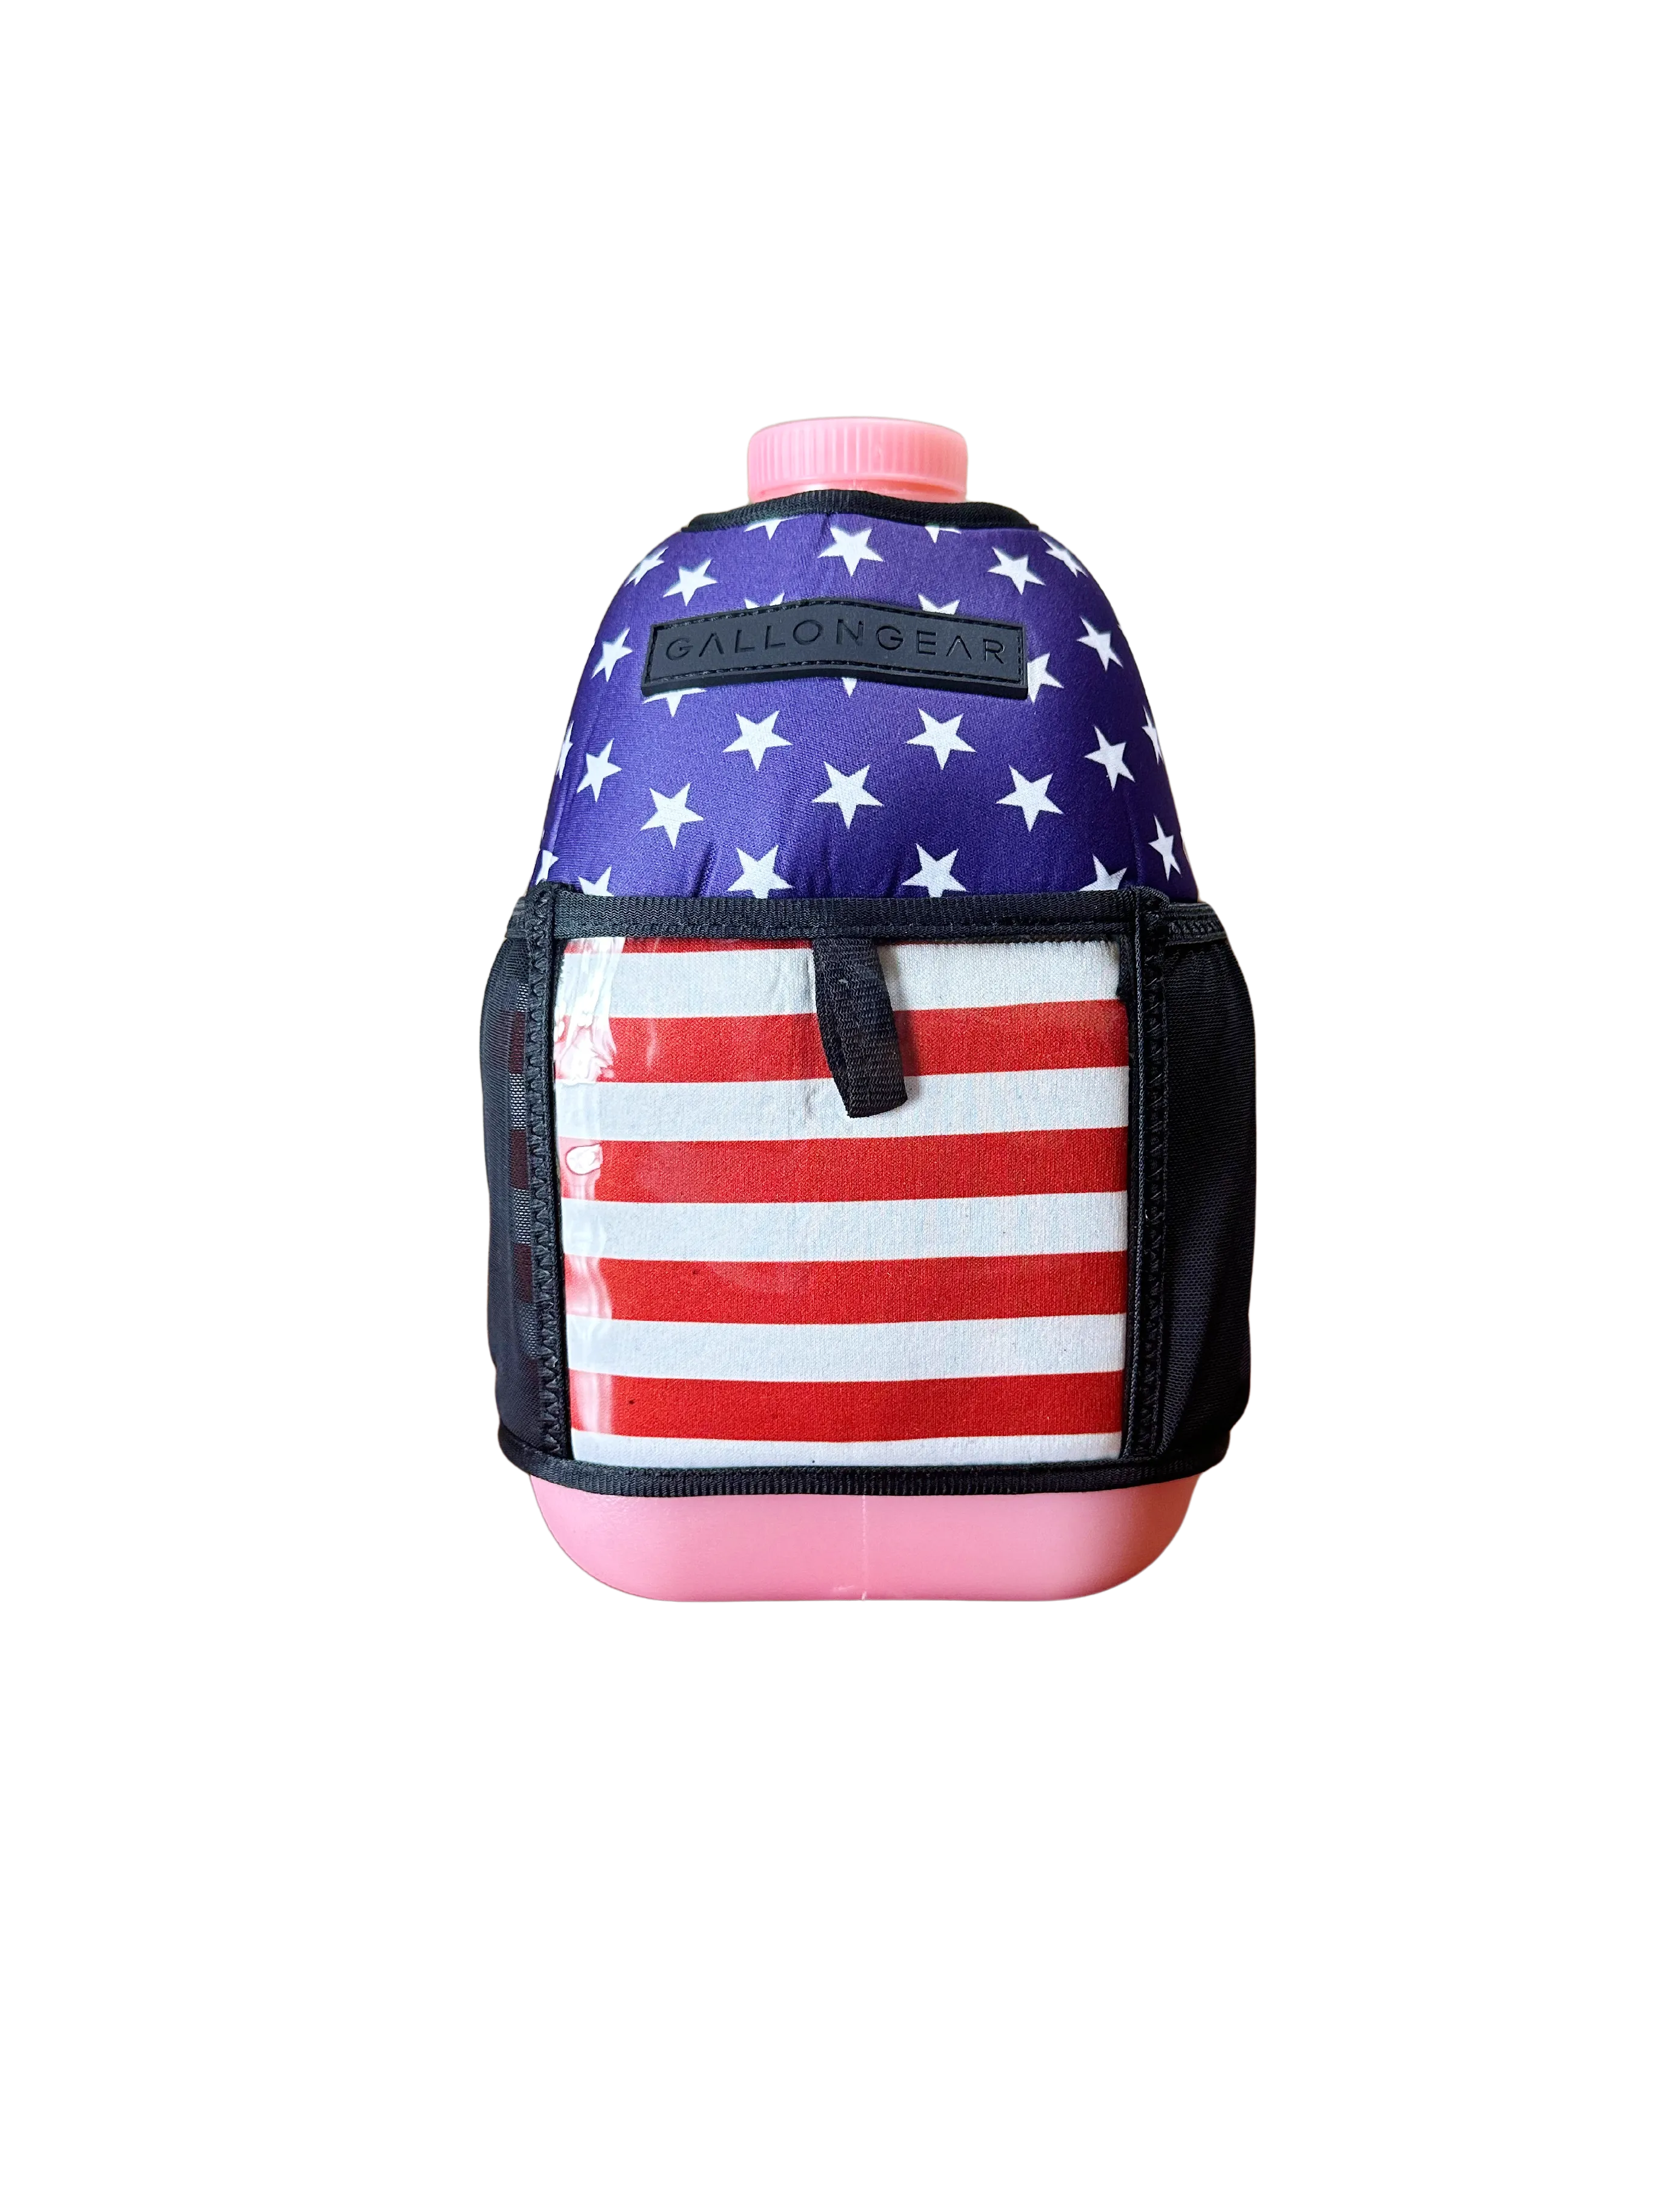 (1 GALLON COMBO) Pink Jug / USA Flag Booty